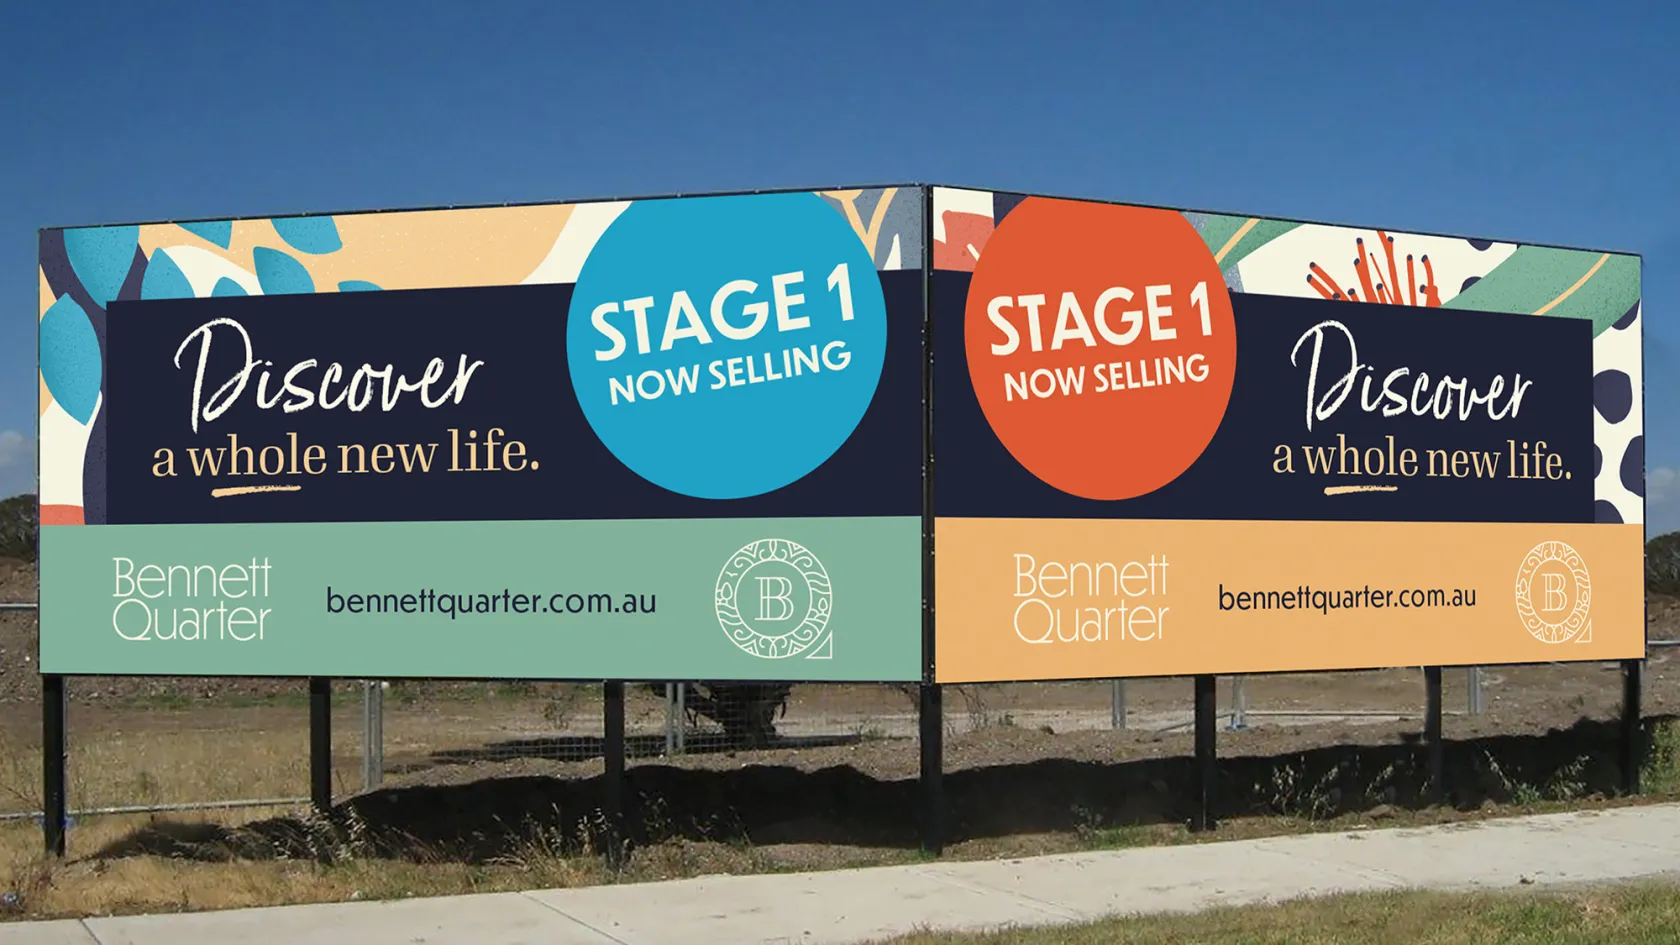 Bennett Quarter Property Branding & Marketing, BQ 7 Banner